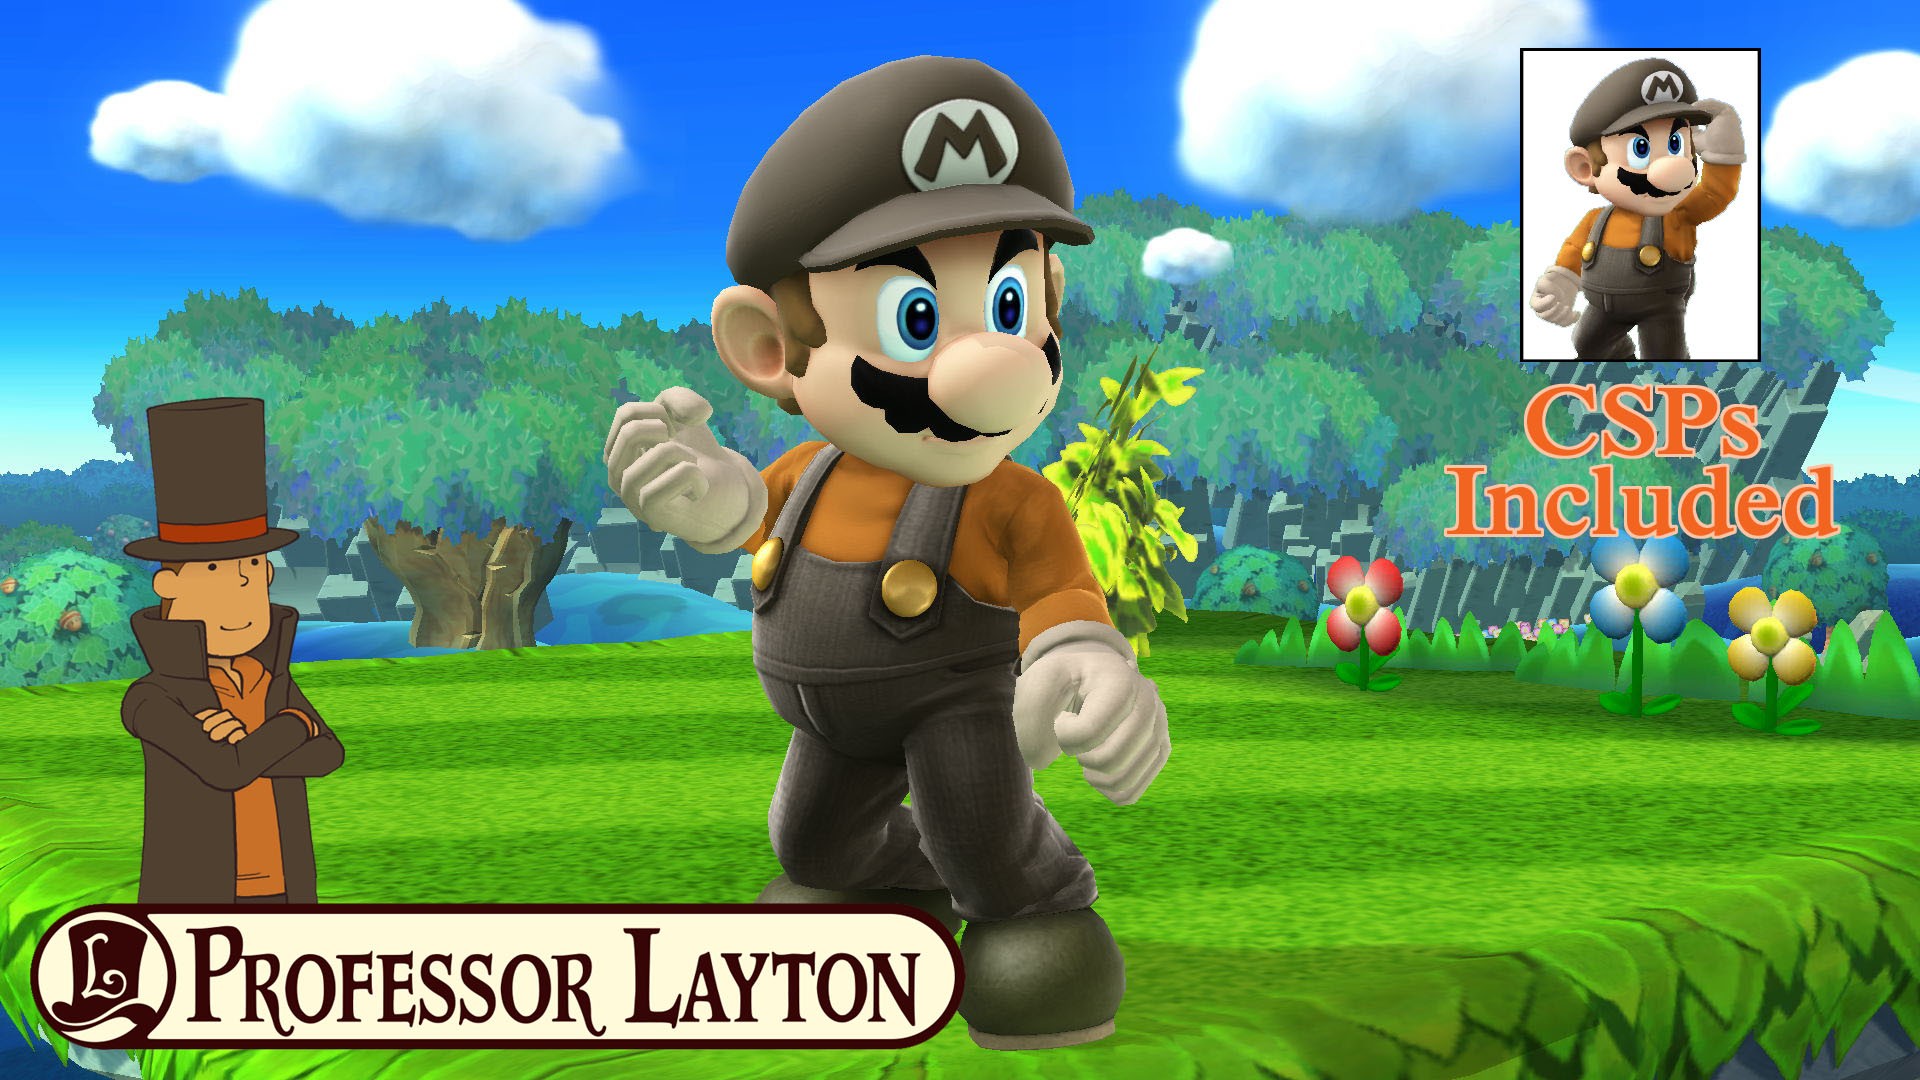 Professor Layton Themed Mario - Cartoon - HD Wallpaper 